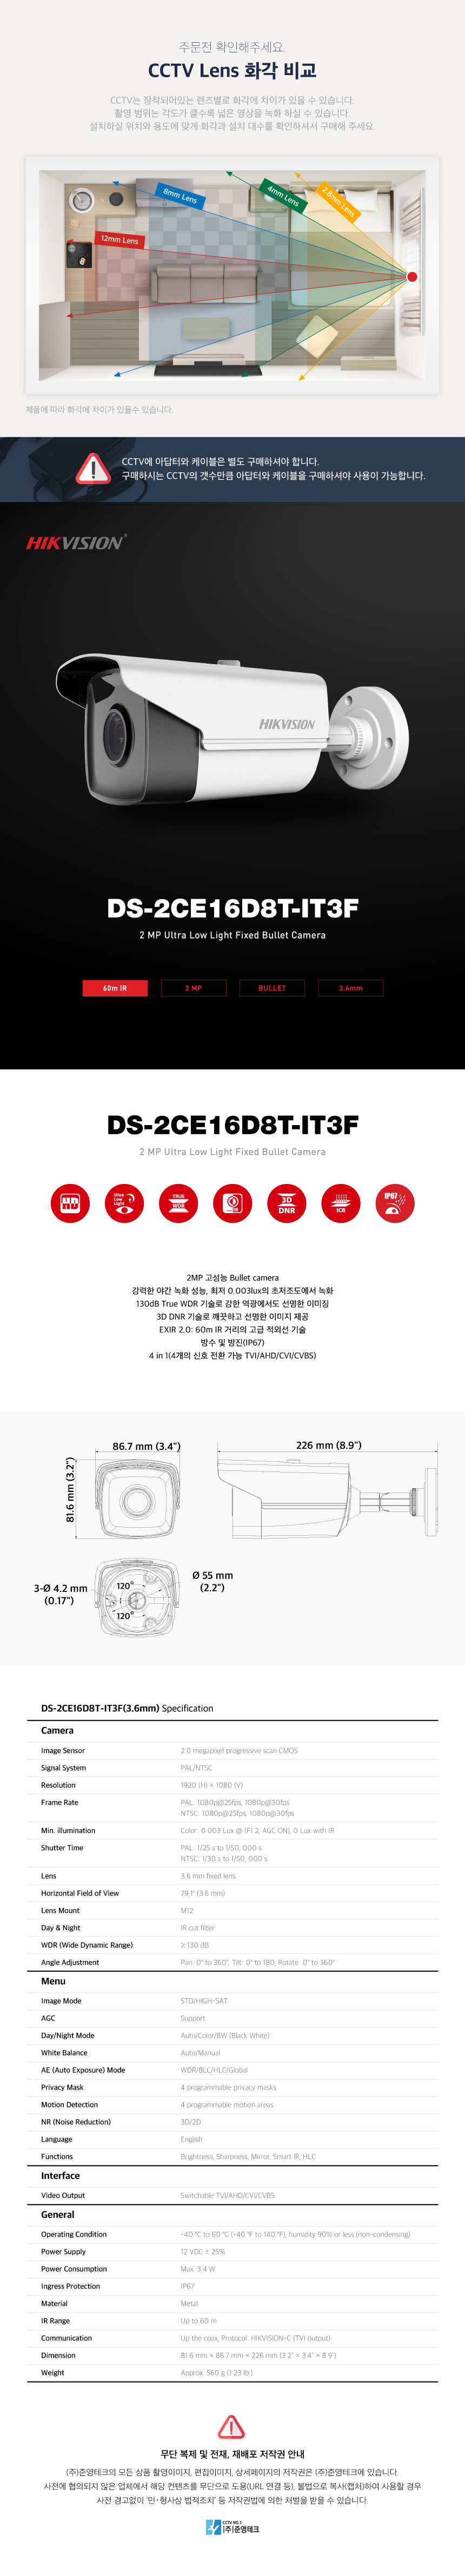 DS-2CE16D8T-IT3F_3.6mm_172715_125020.png